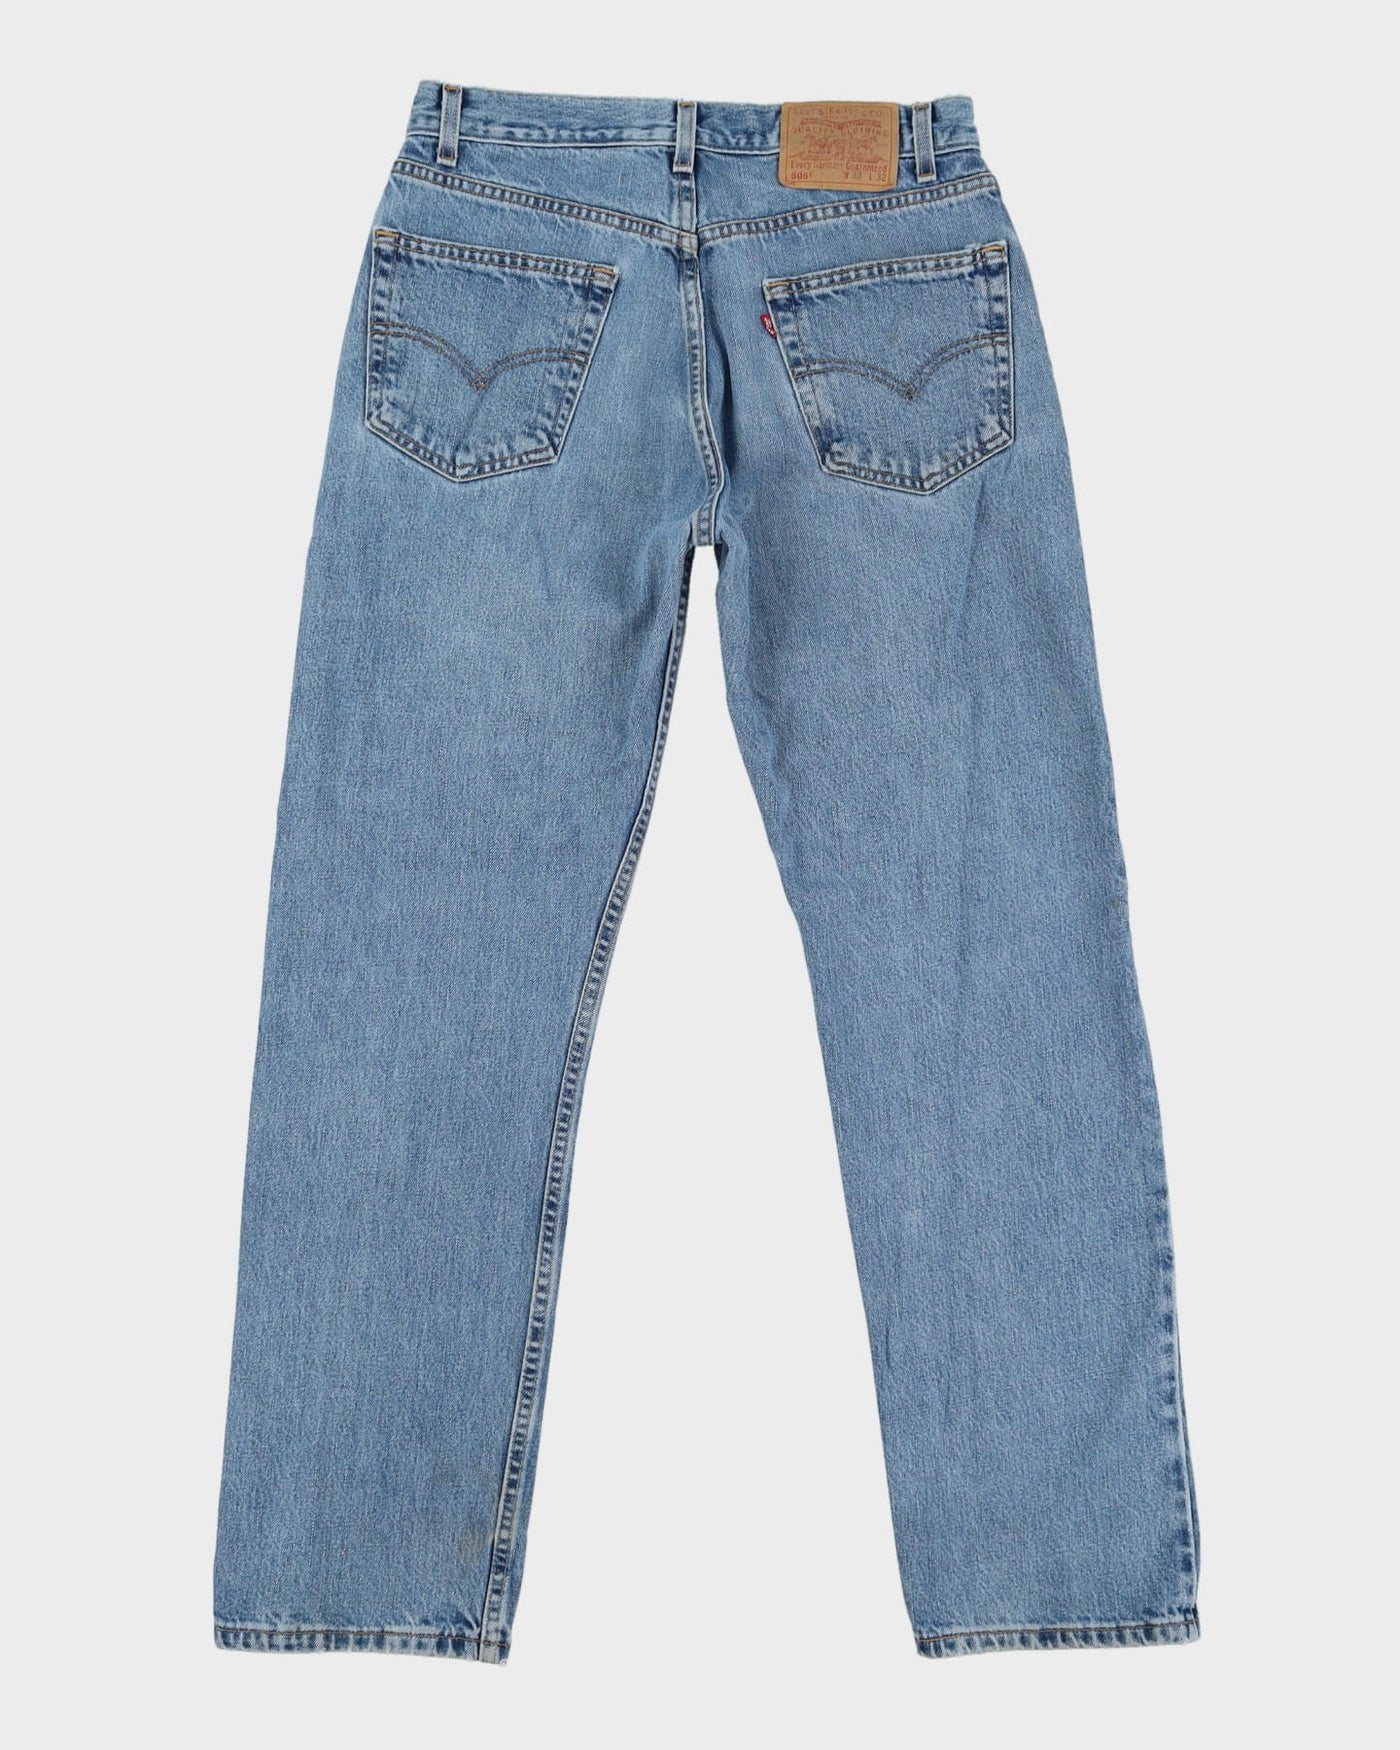 Vintage 90s Levi's 505 Blue Stone Wash Jeans - W33 L32